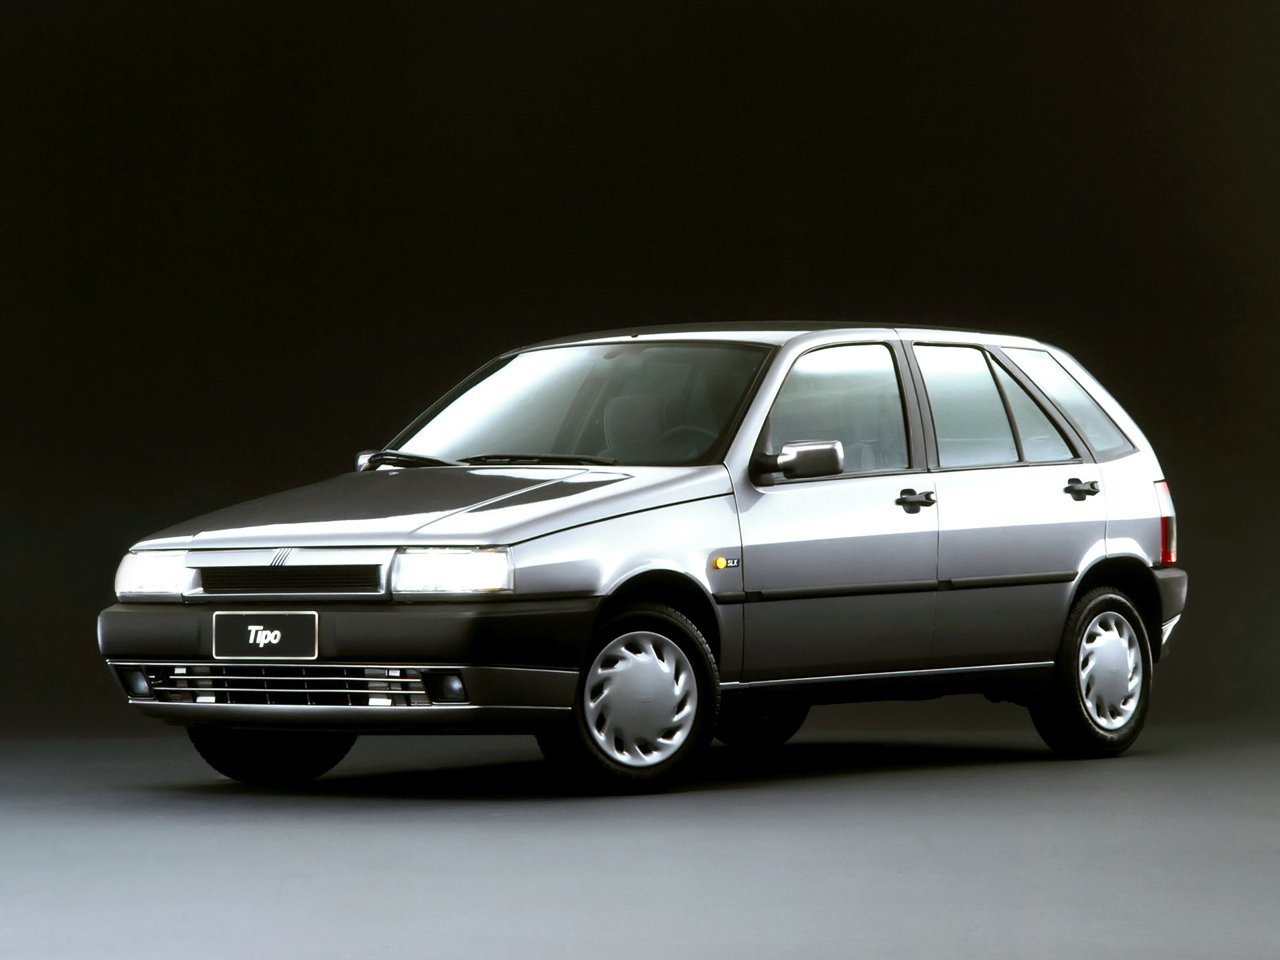 Fiat Tipo 1988 - 1995